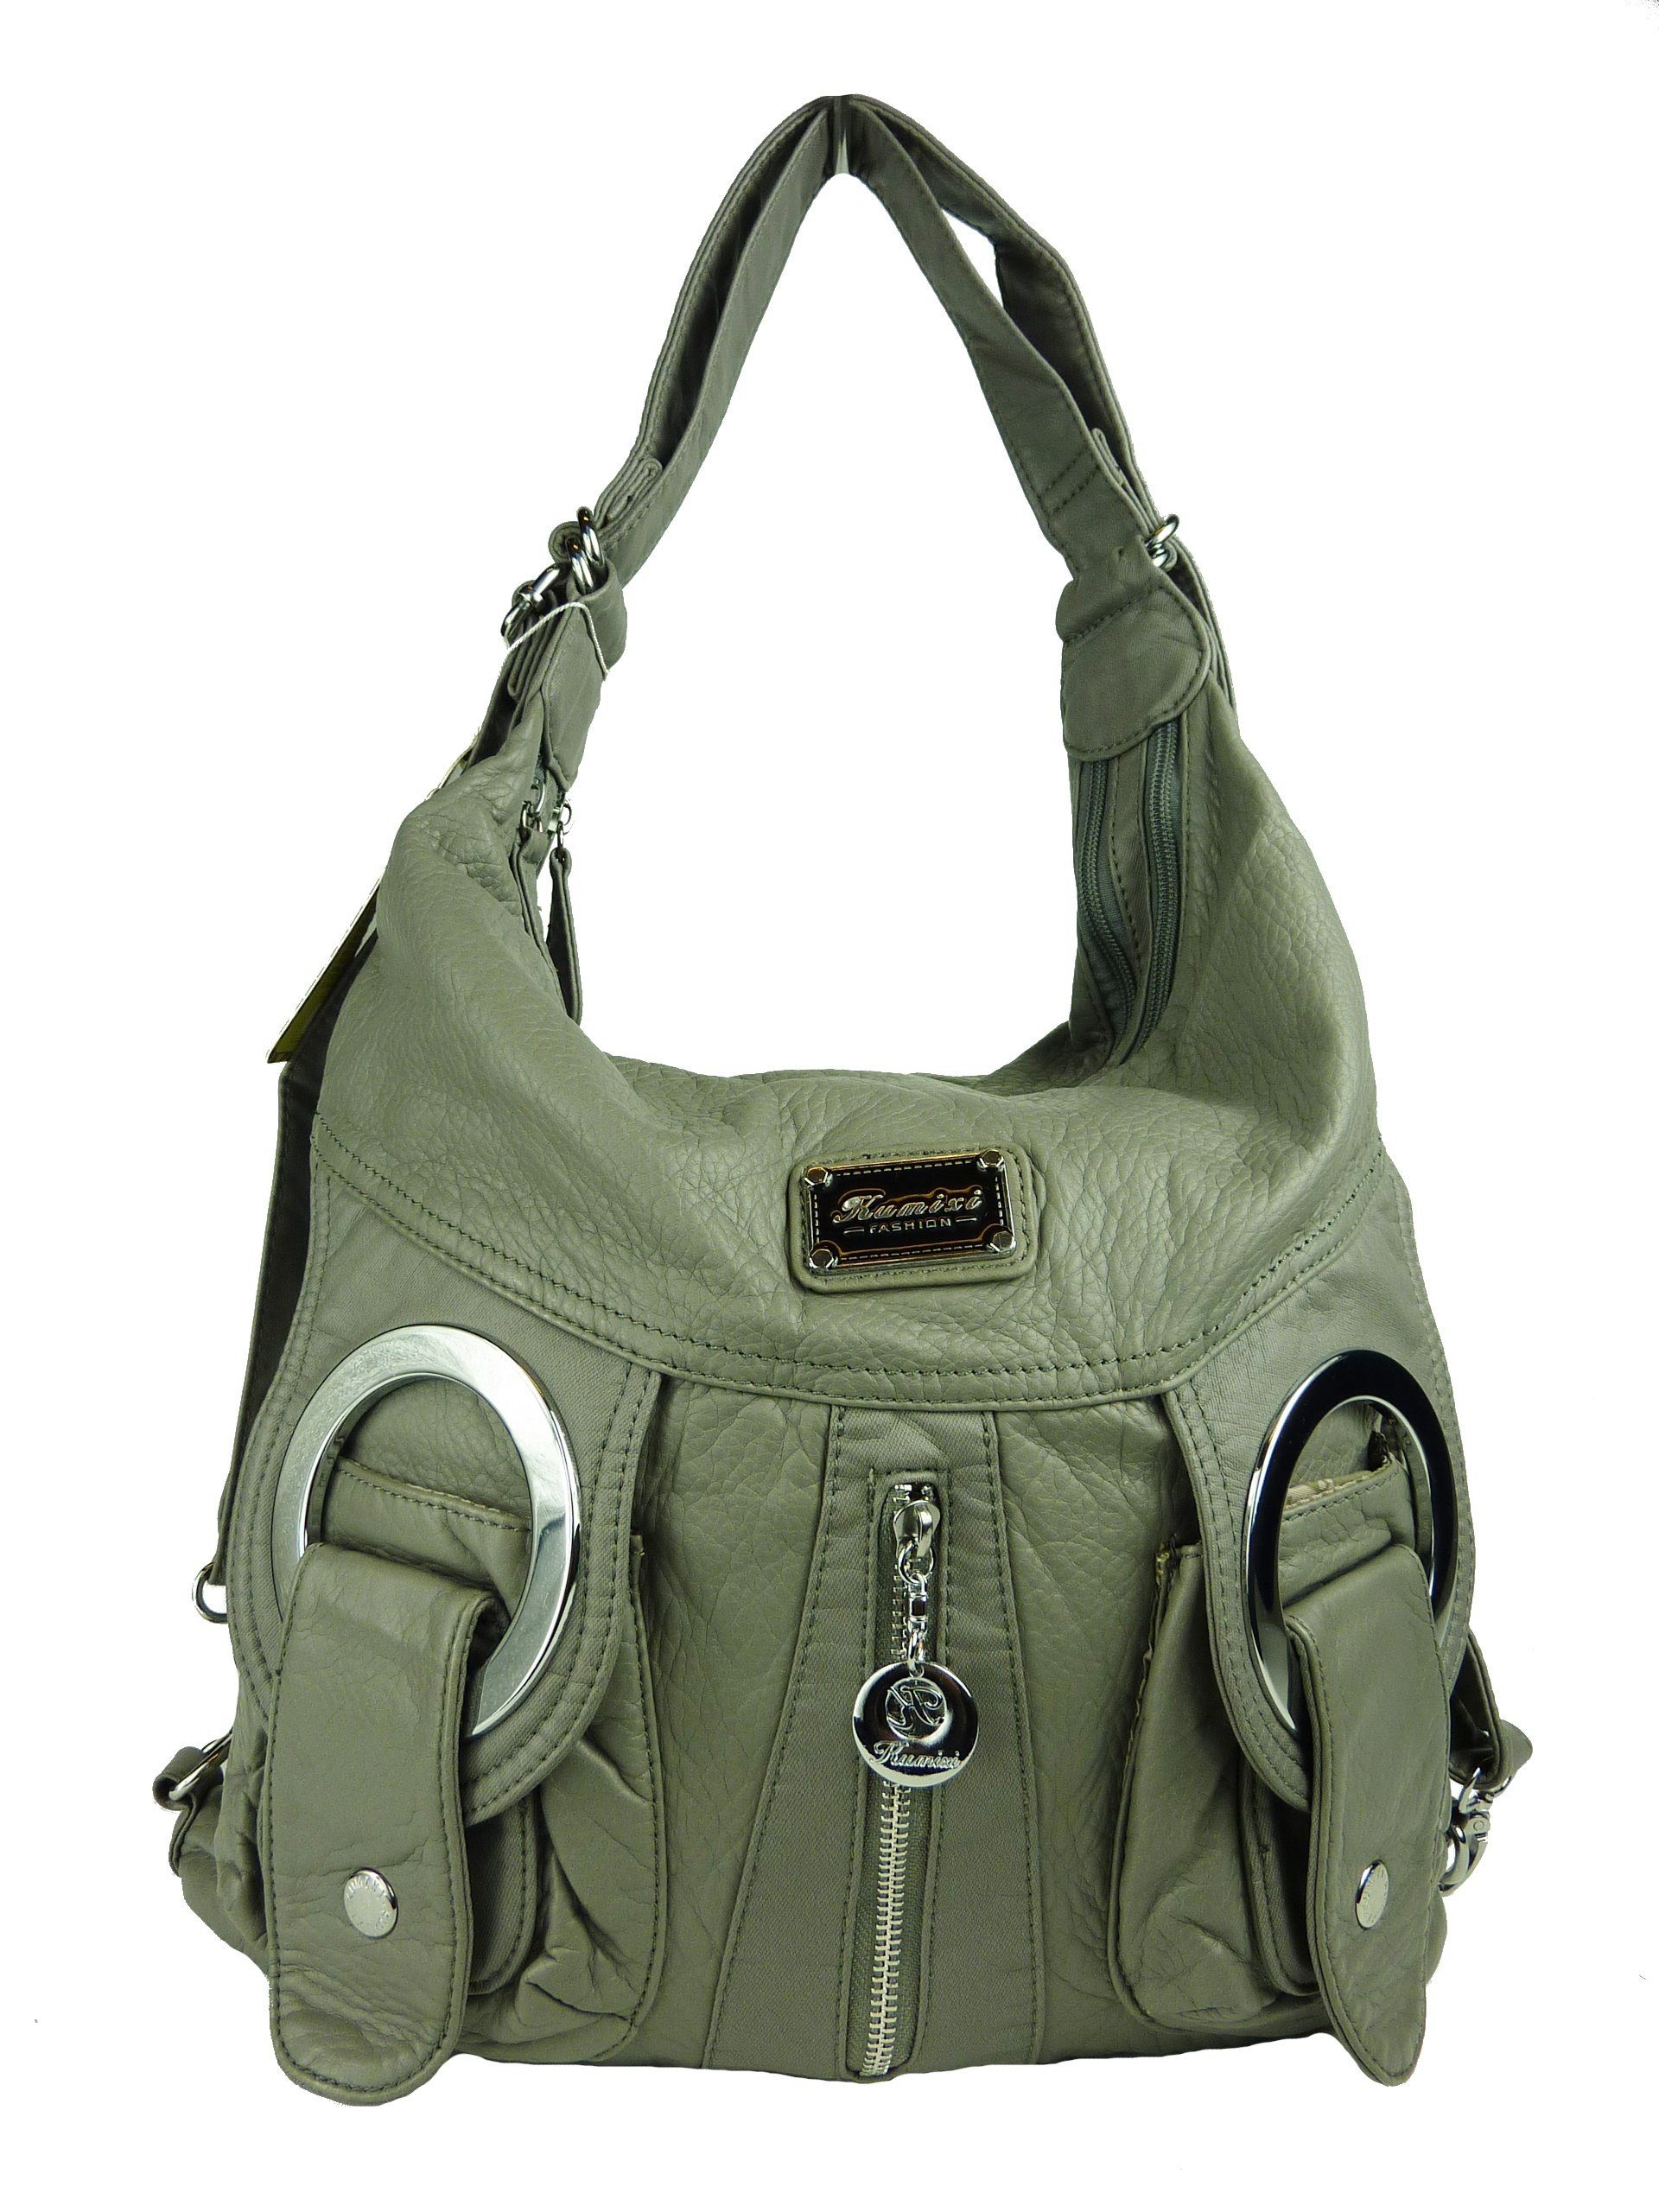 Tasche Multifunktionstasche, Rucksack, Taschen4life Schultertasche Schulterriemen, als verstellbarer Rucksack oder oder tragbar W6802 Schultertasche Rucksacktasche grau